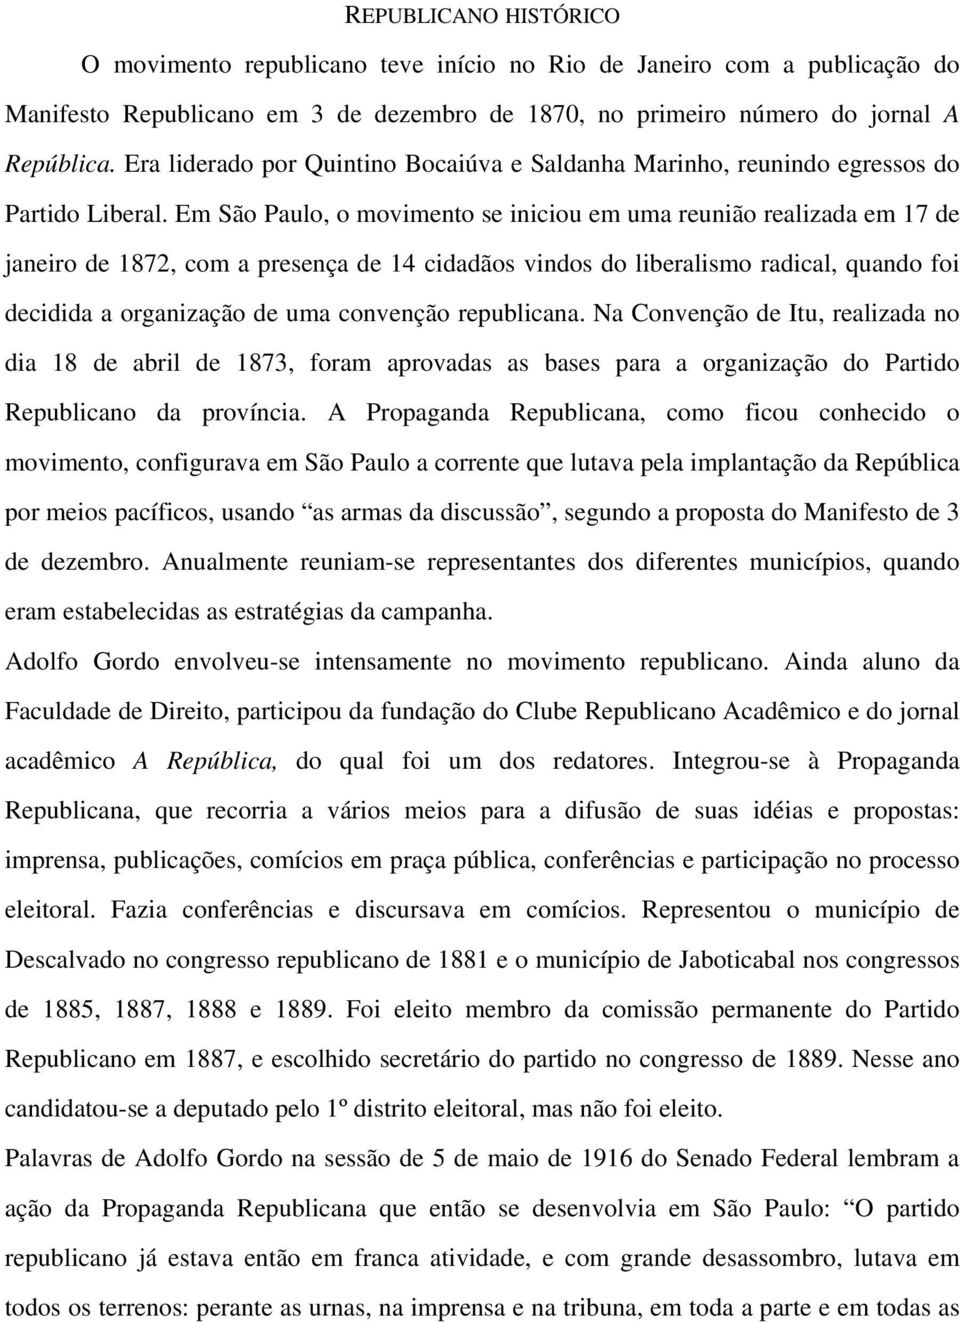 Em São Paulo, o movimento se iniciou em uma reunião realizada em 17 de janeiro de 1872, com a presença de 14 cidadãos vindos do liberalismo radical, quando foi decidida a organização de uma convenção